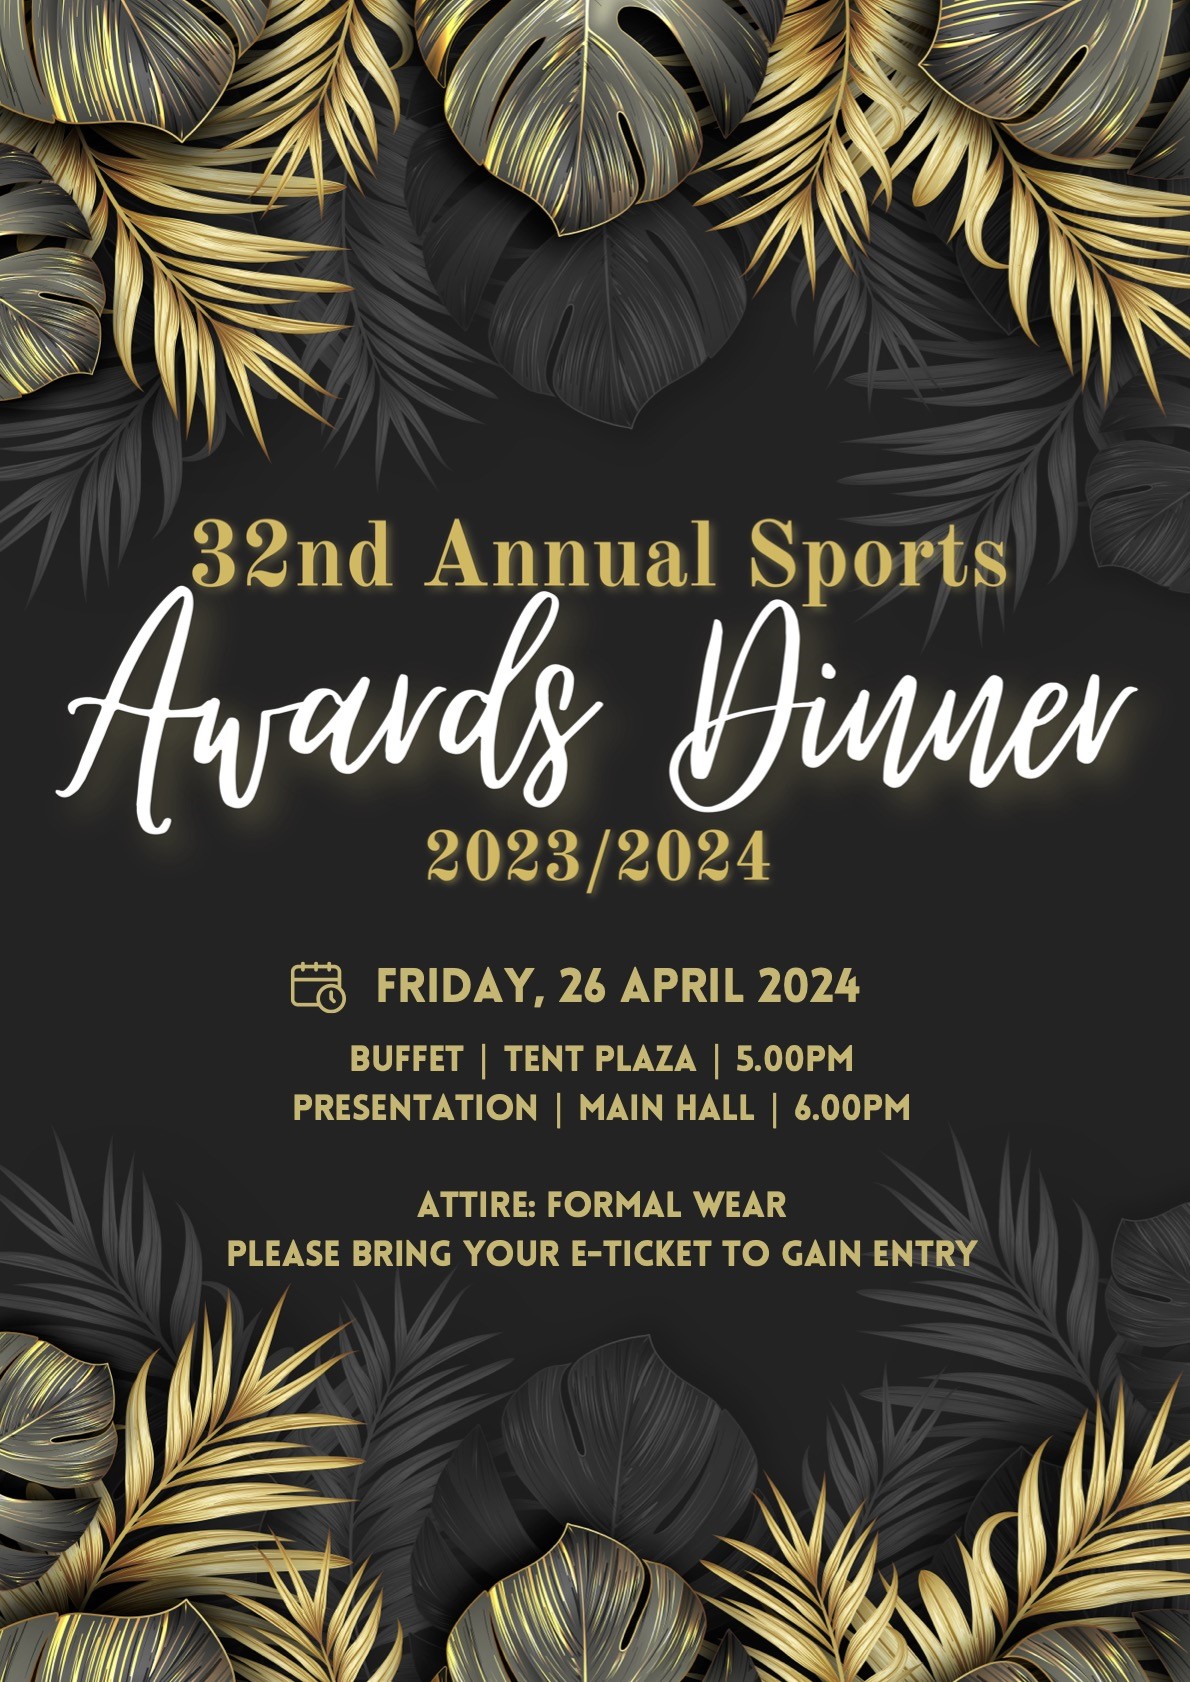 Dover 32nd Annual Sports Awards Dinner  on abr. 26, 17:00@Main Hall - Dover Campus - Compra entradas y obtén información enUWCSEA Ticket Hub uwcsea